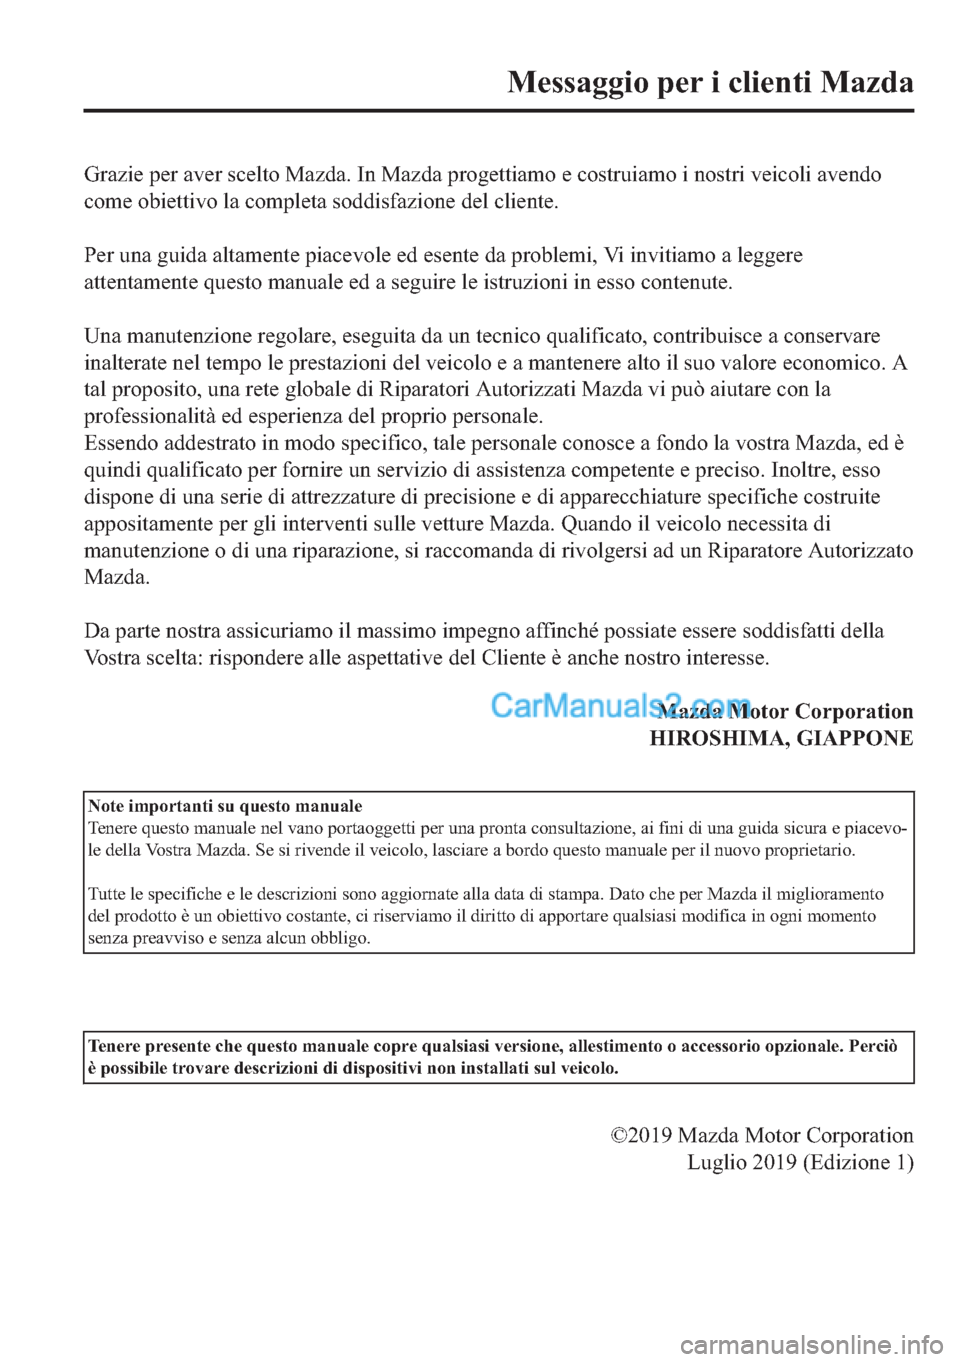 MAZDA MODEL 2 2019  Manuale del proprietario (in Italian) �*�U�D�]�L�H��S�H�U��D�Y�H�U��V�F�H�O�W�R��0�D�]�G�D���,�Q��0�D�]�G�D��S�U�R�J�H�W�W�L�D�P�R��H��F�R�V�W�U�X�L�D�P�R��L��Q�R�V�W�U�L��Y�H�L�F�R�O�L��D�Y�H�Q�G�R
�F�R�P�H��R�E�L�H�W�W�L�